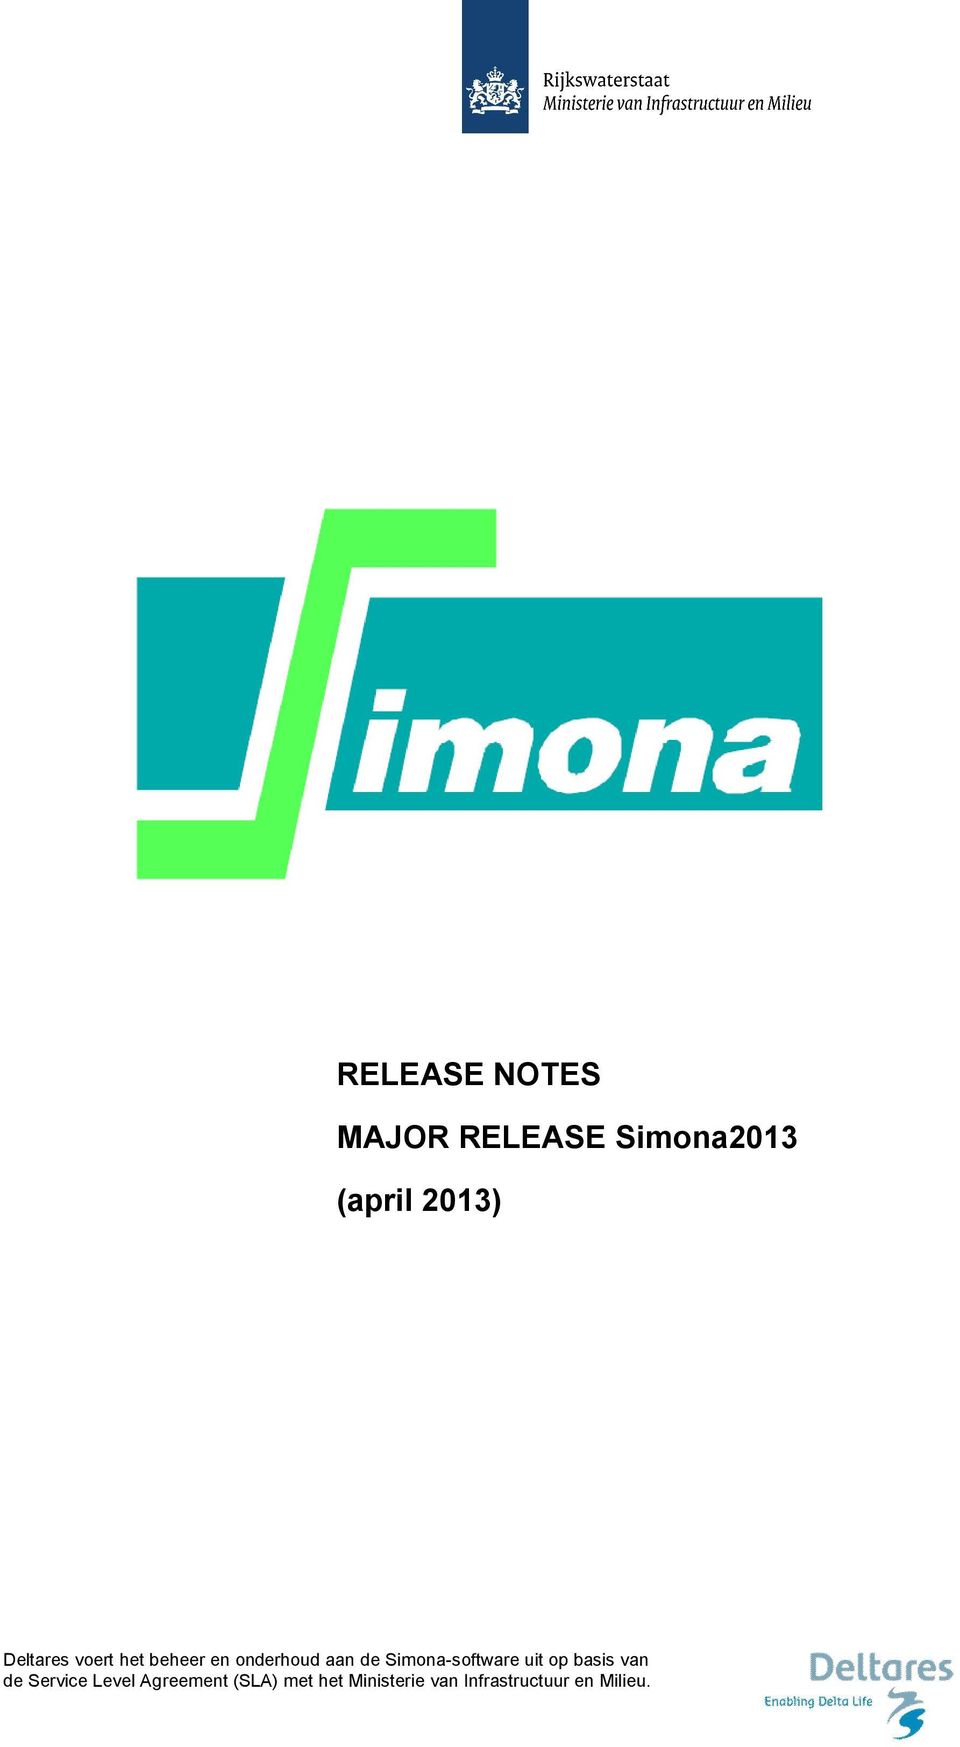 Simona-software uit op basis van de Service Level